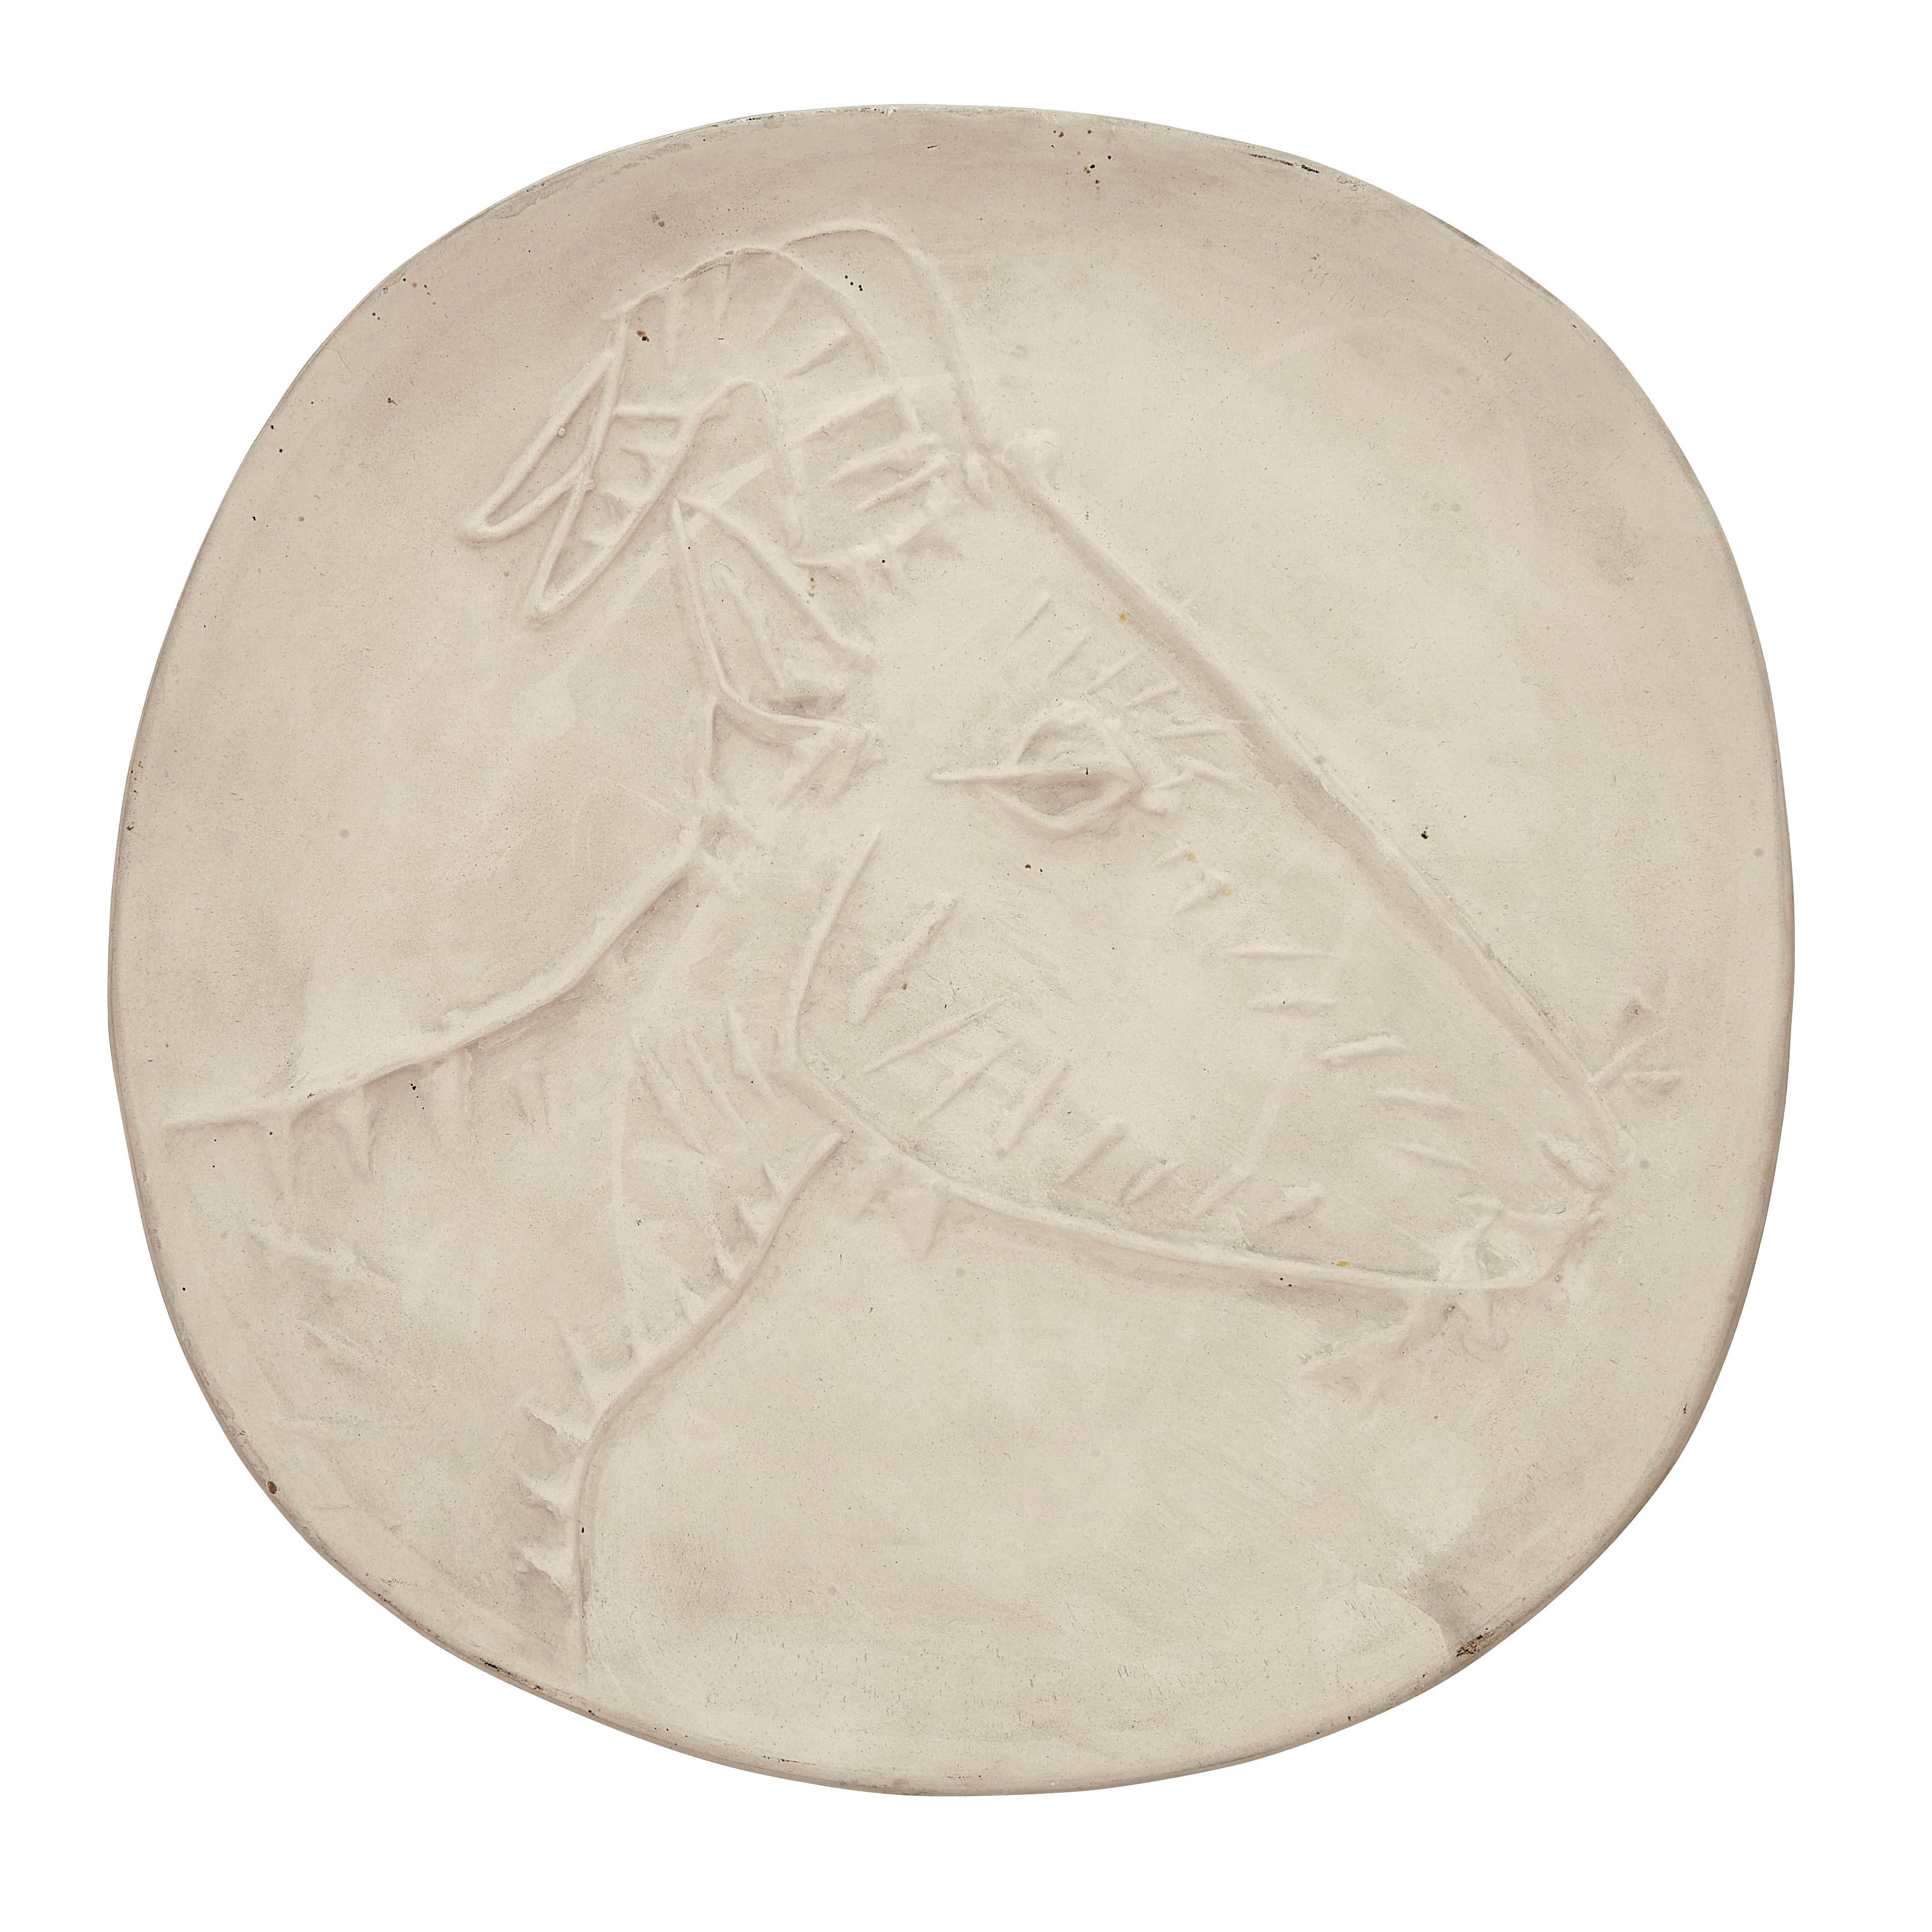 PABLO PICASSO (1881-1973) 
Tête de chèvre de profil (A. R. 109 V)

Assiette Terre de faïence, 1950, non émaillée, en dehors des éditions A. R. 109 et A. R. 110, avec les cachets Empreinte Originale de Picasso et Madoura.